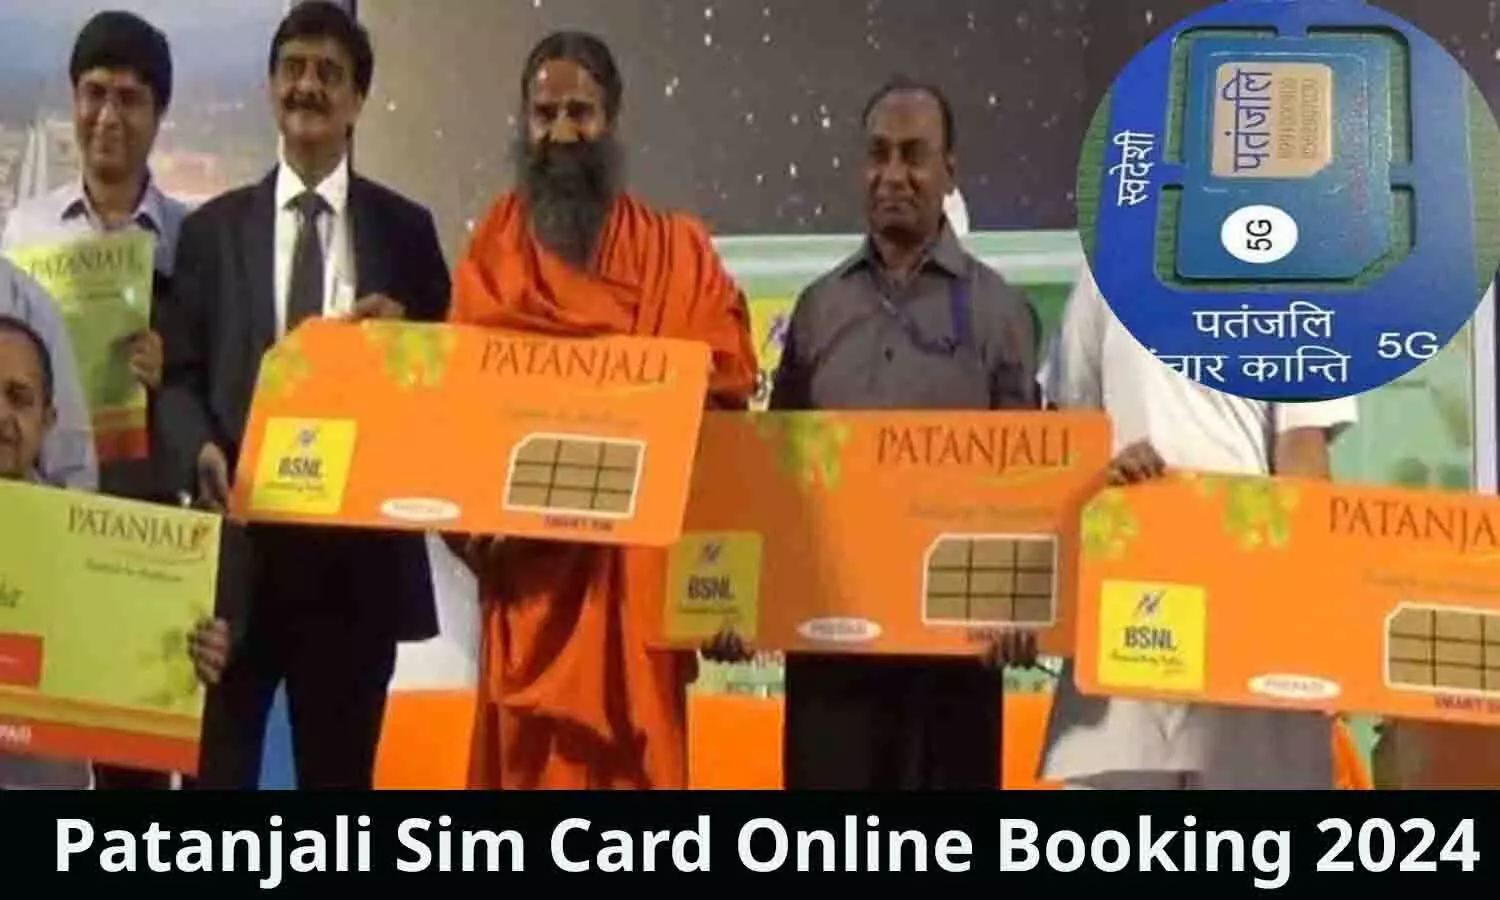 Patanjali Sim Card Online Booking 2024: बुकिंग शुरू! आ गया पतंजलि का सिम कार्ड, 2GB डाटा के साथ बहुत कुछ फ्री, 10% का डिस्काउंट भी